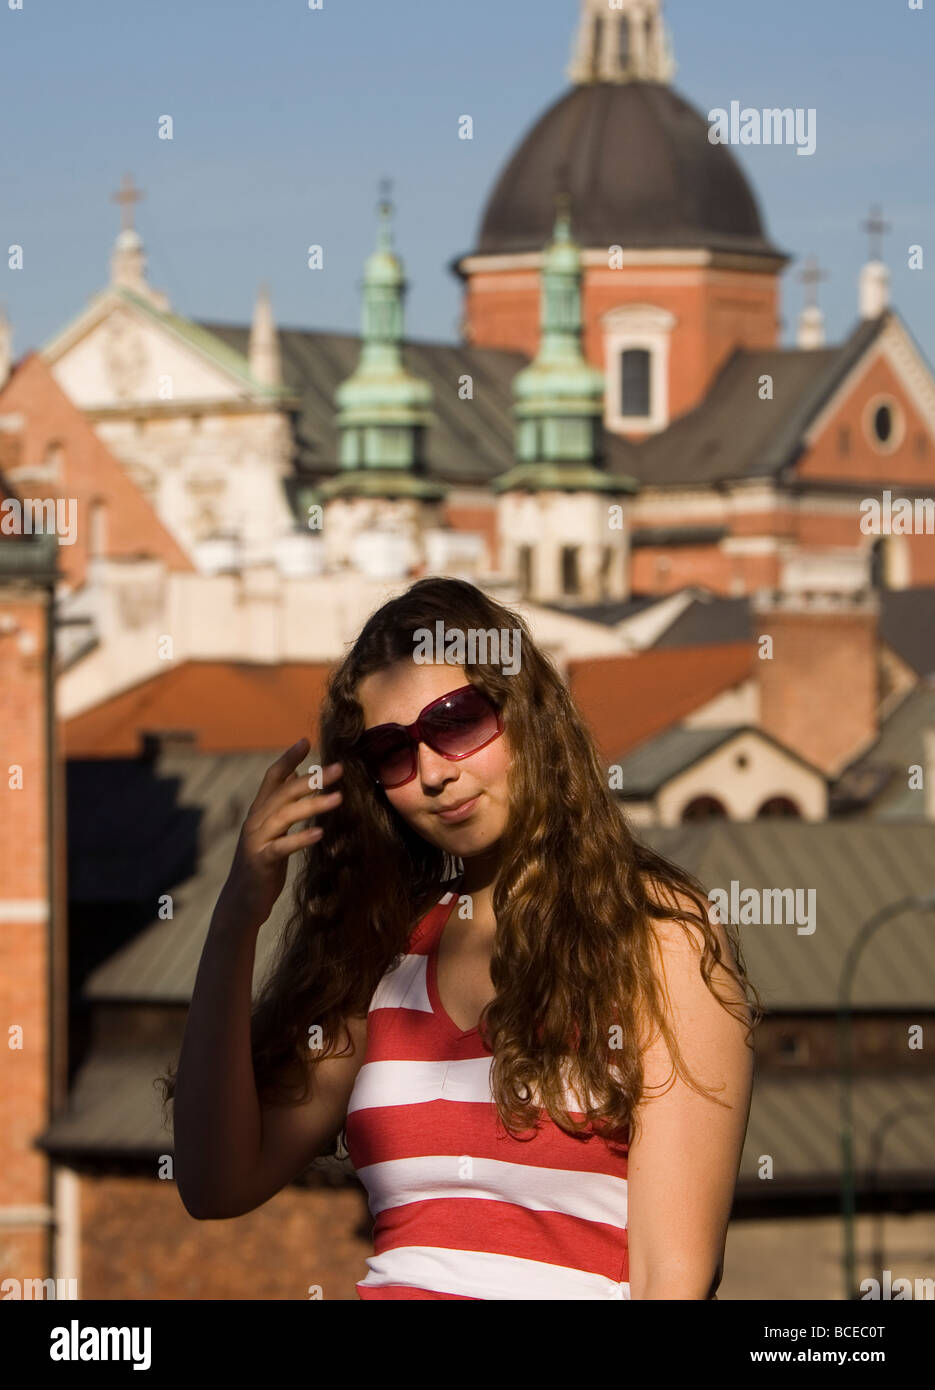 Poland Krakow young woman Stock Photo